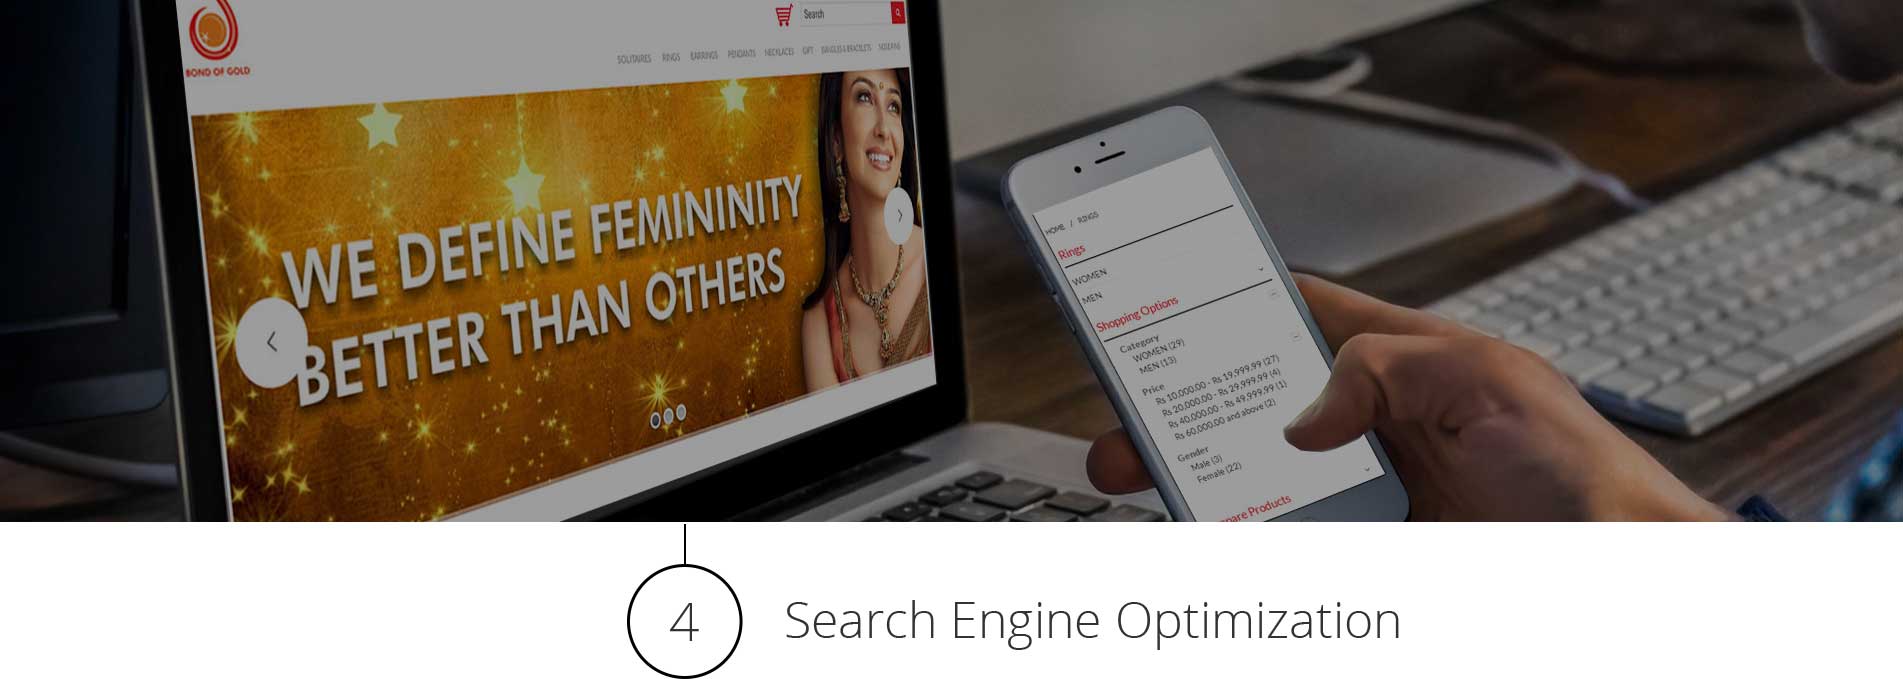 Search Engine Optimization E-Commerce